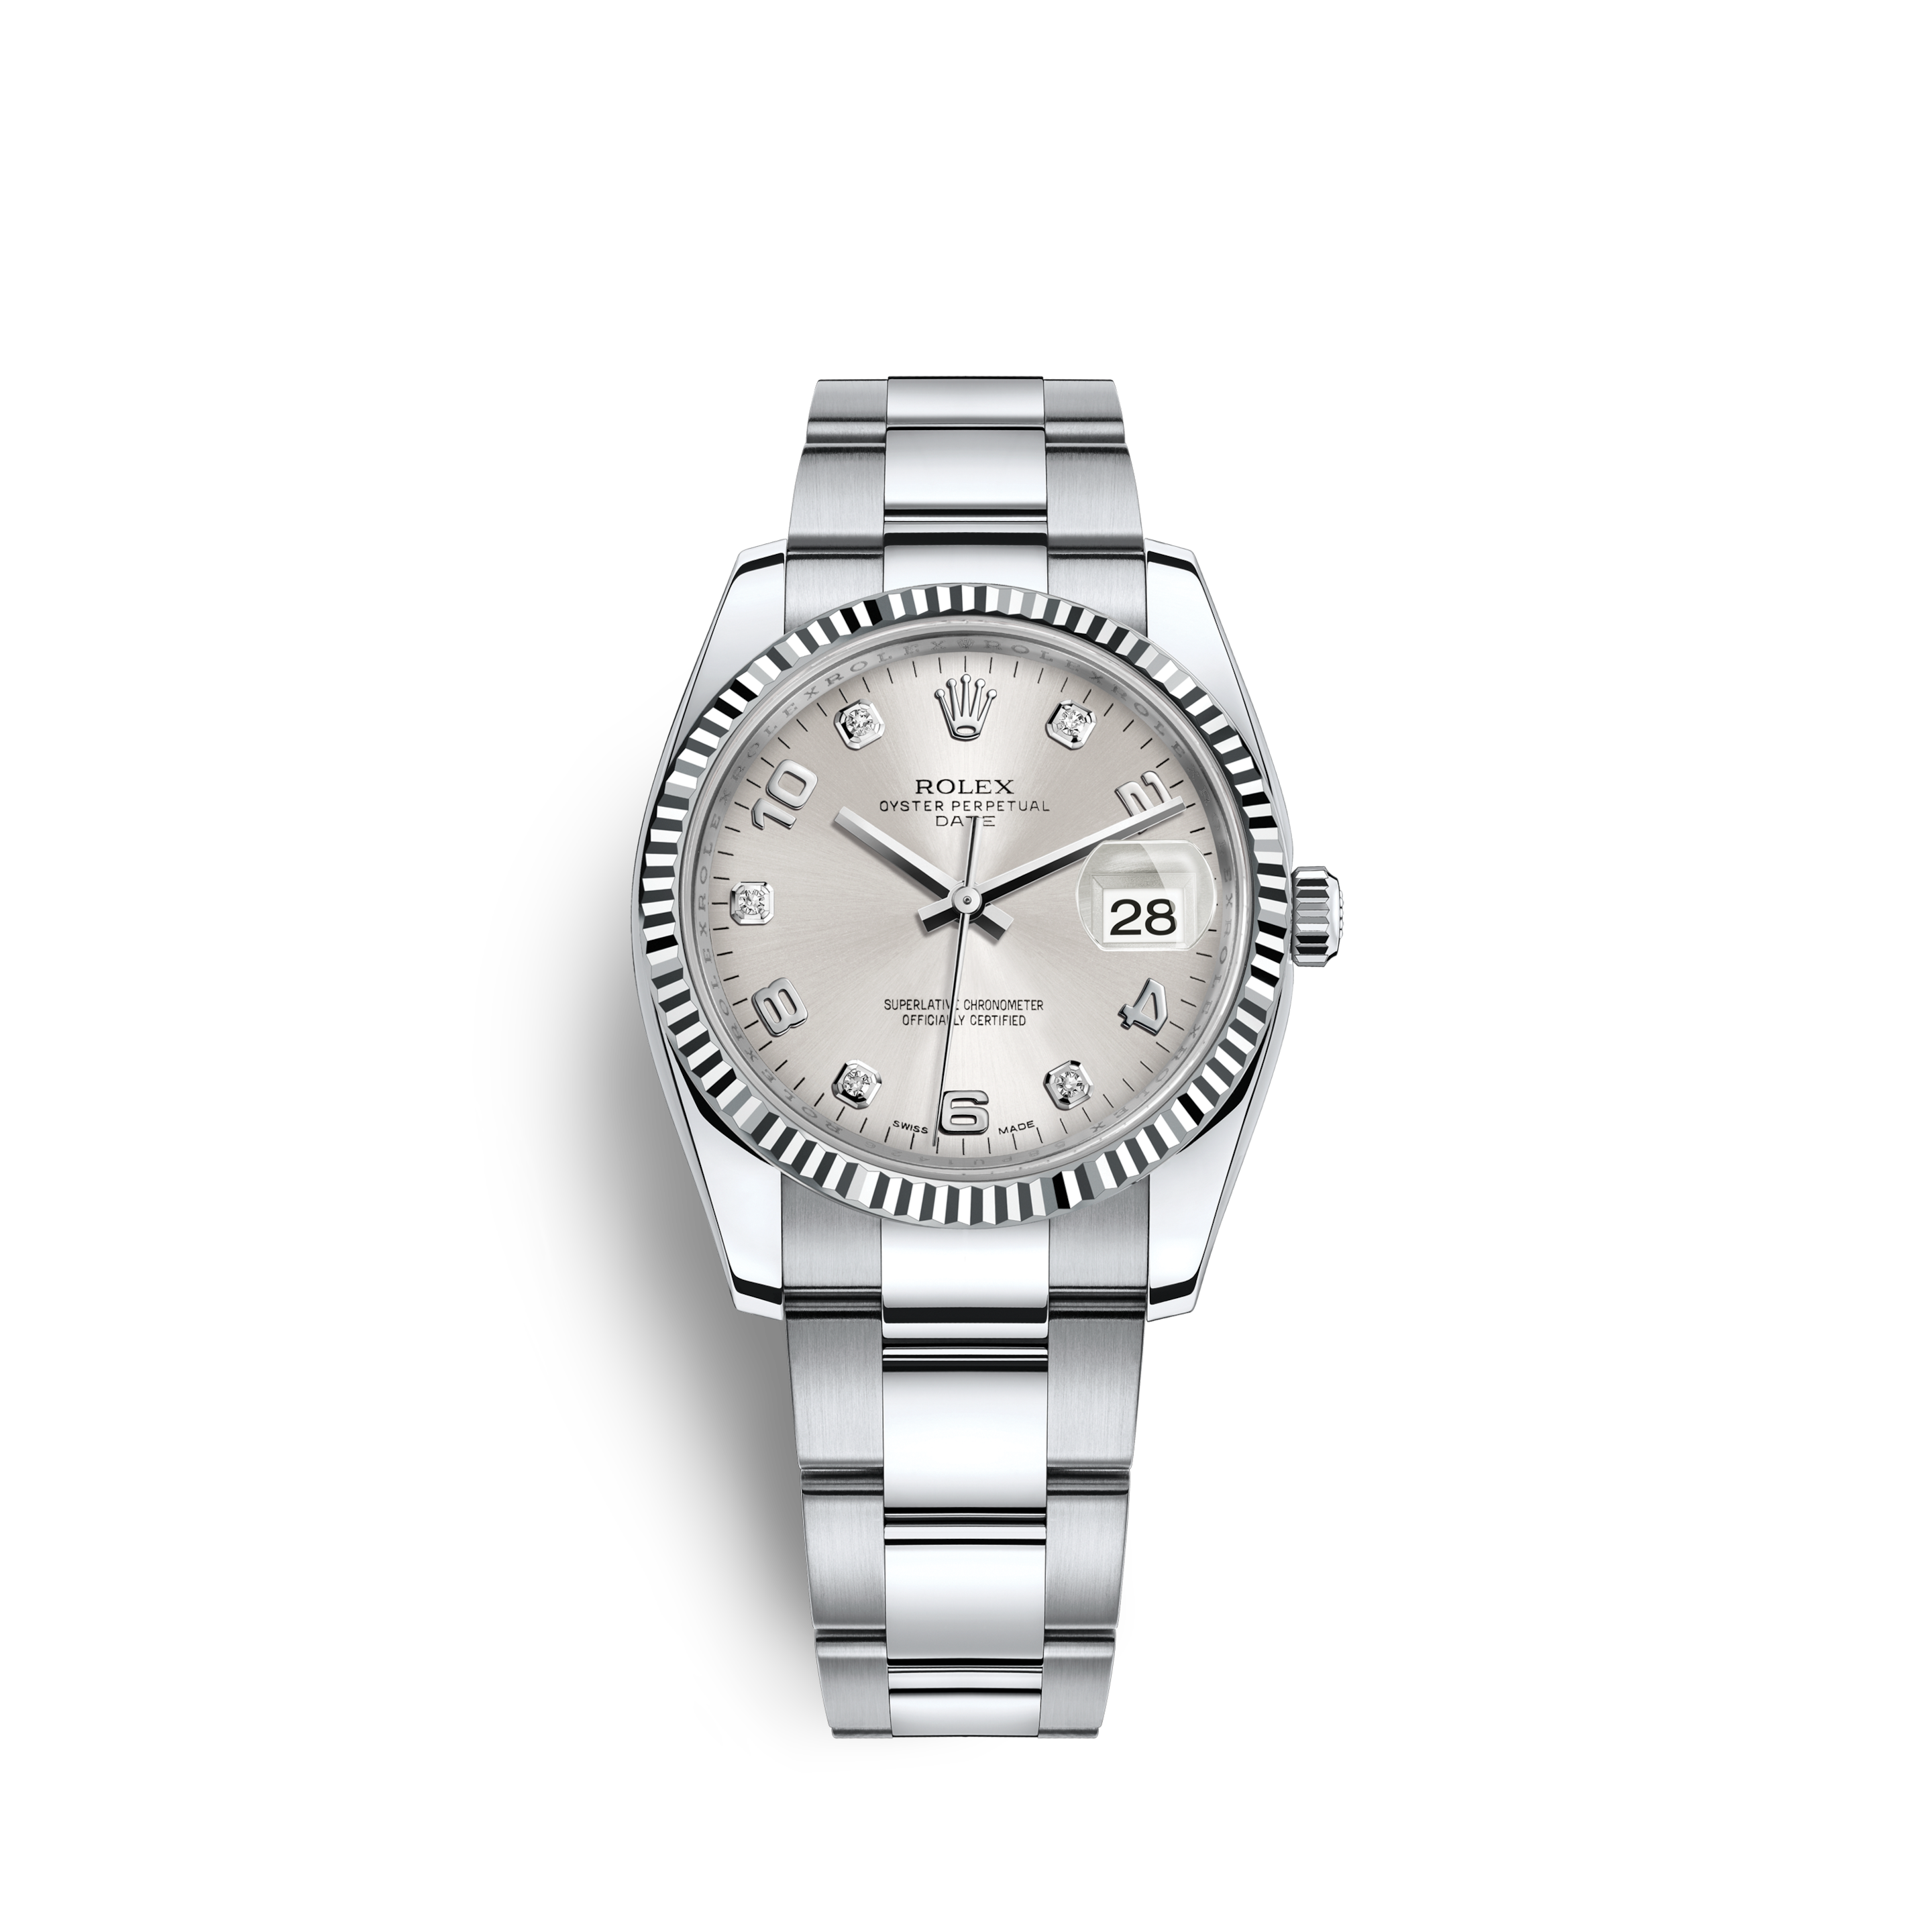 Часы из стали – Поиск часов Rolex